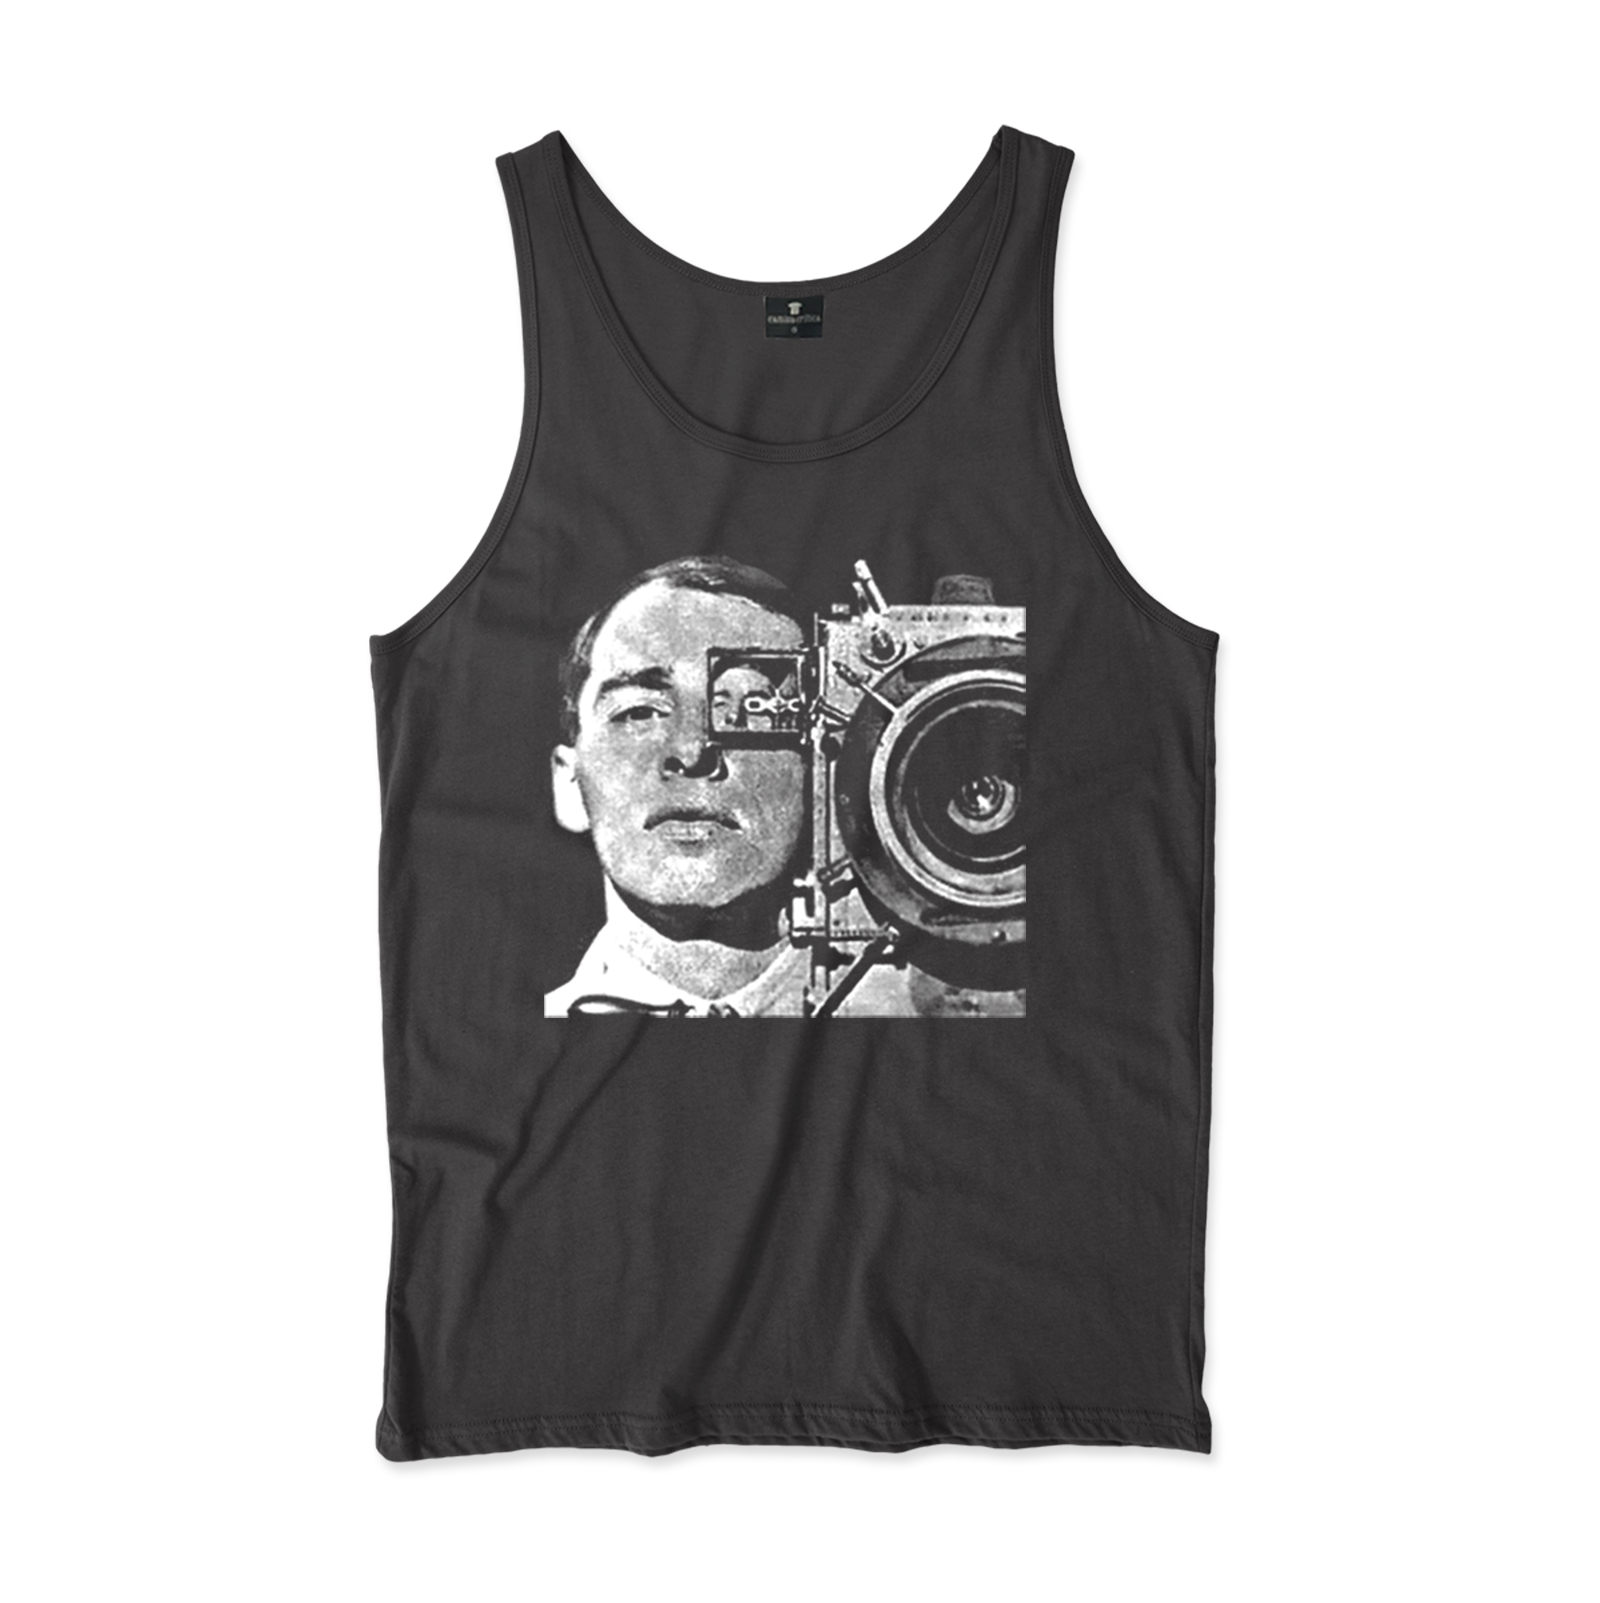 Camiseta Regata. Estampa: Homem com camera de filmar dos anos 1920/1930 na mão.